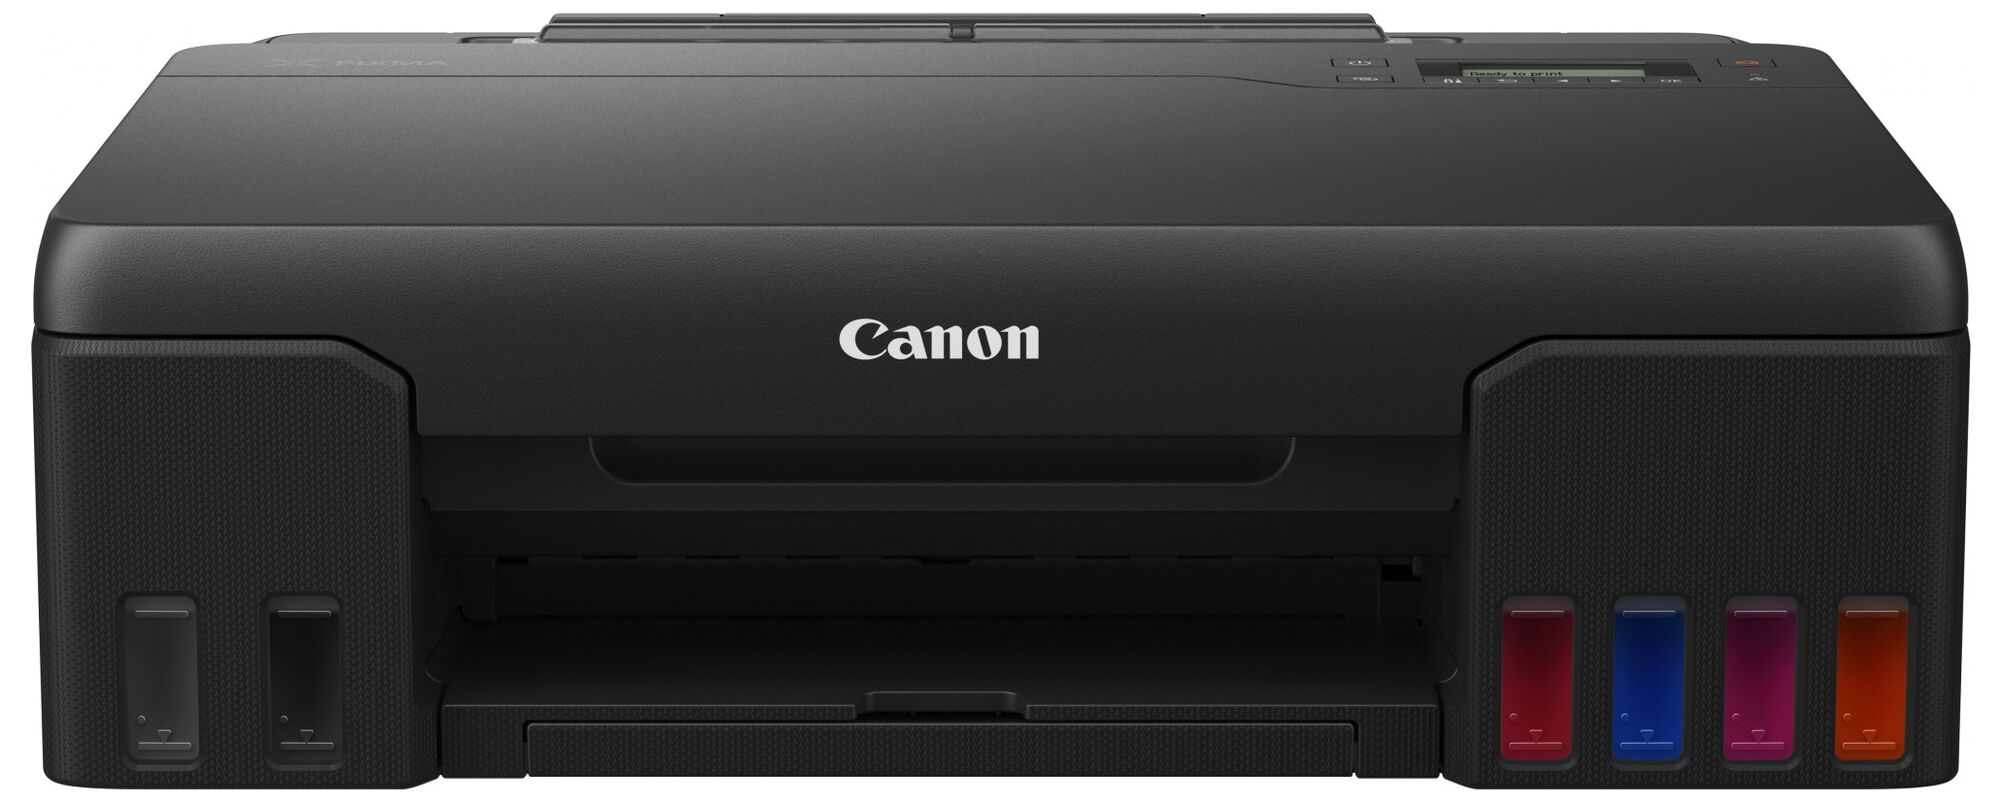 Принтер Canon Canon PIXMA G540 4621C009/A4 цветной/печать Струйный 4800x1200dpi 4стр.мин/Wi-Fi